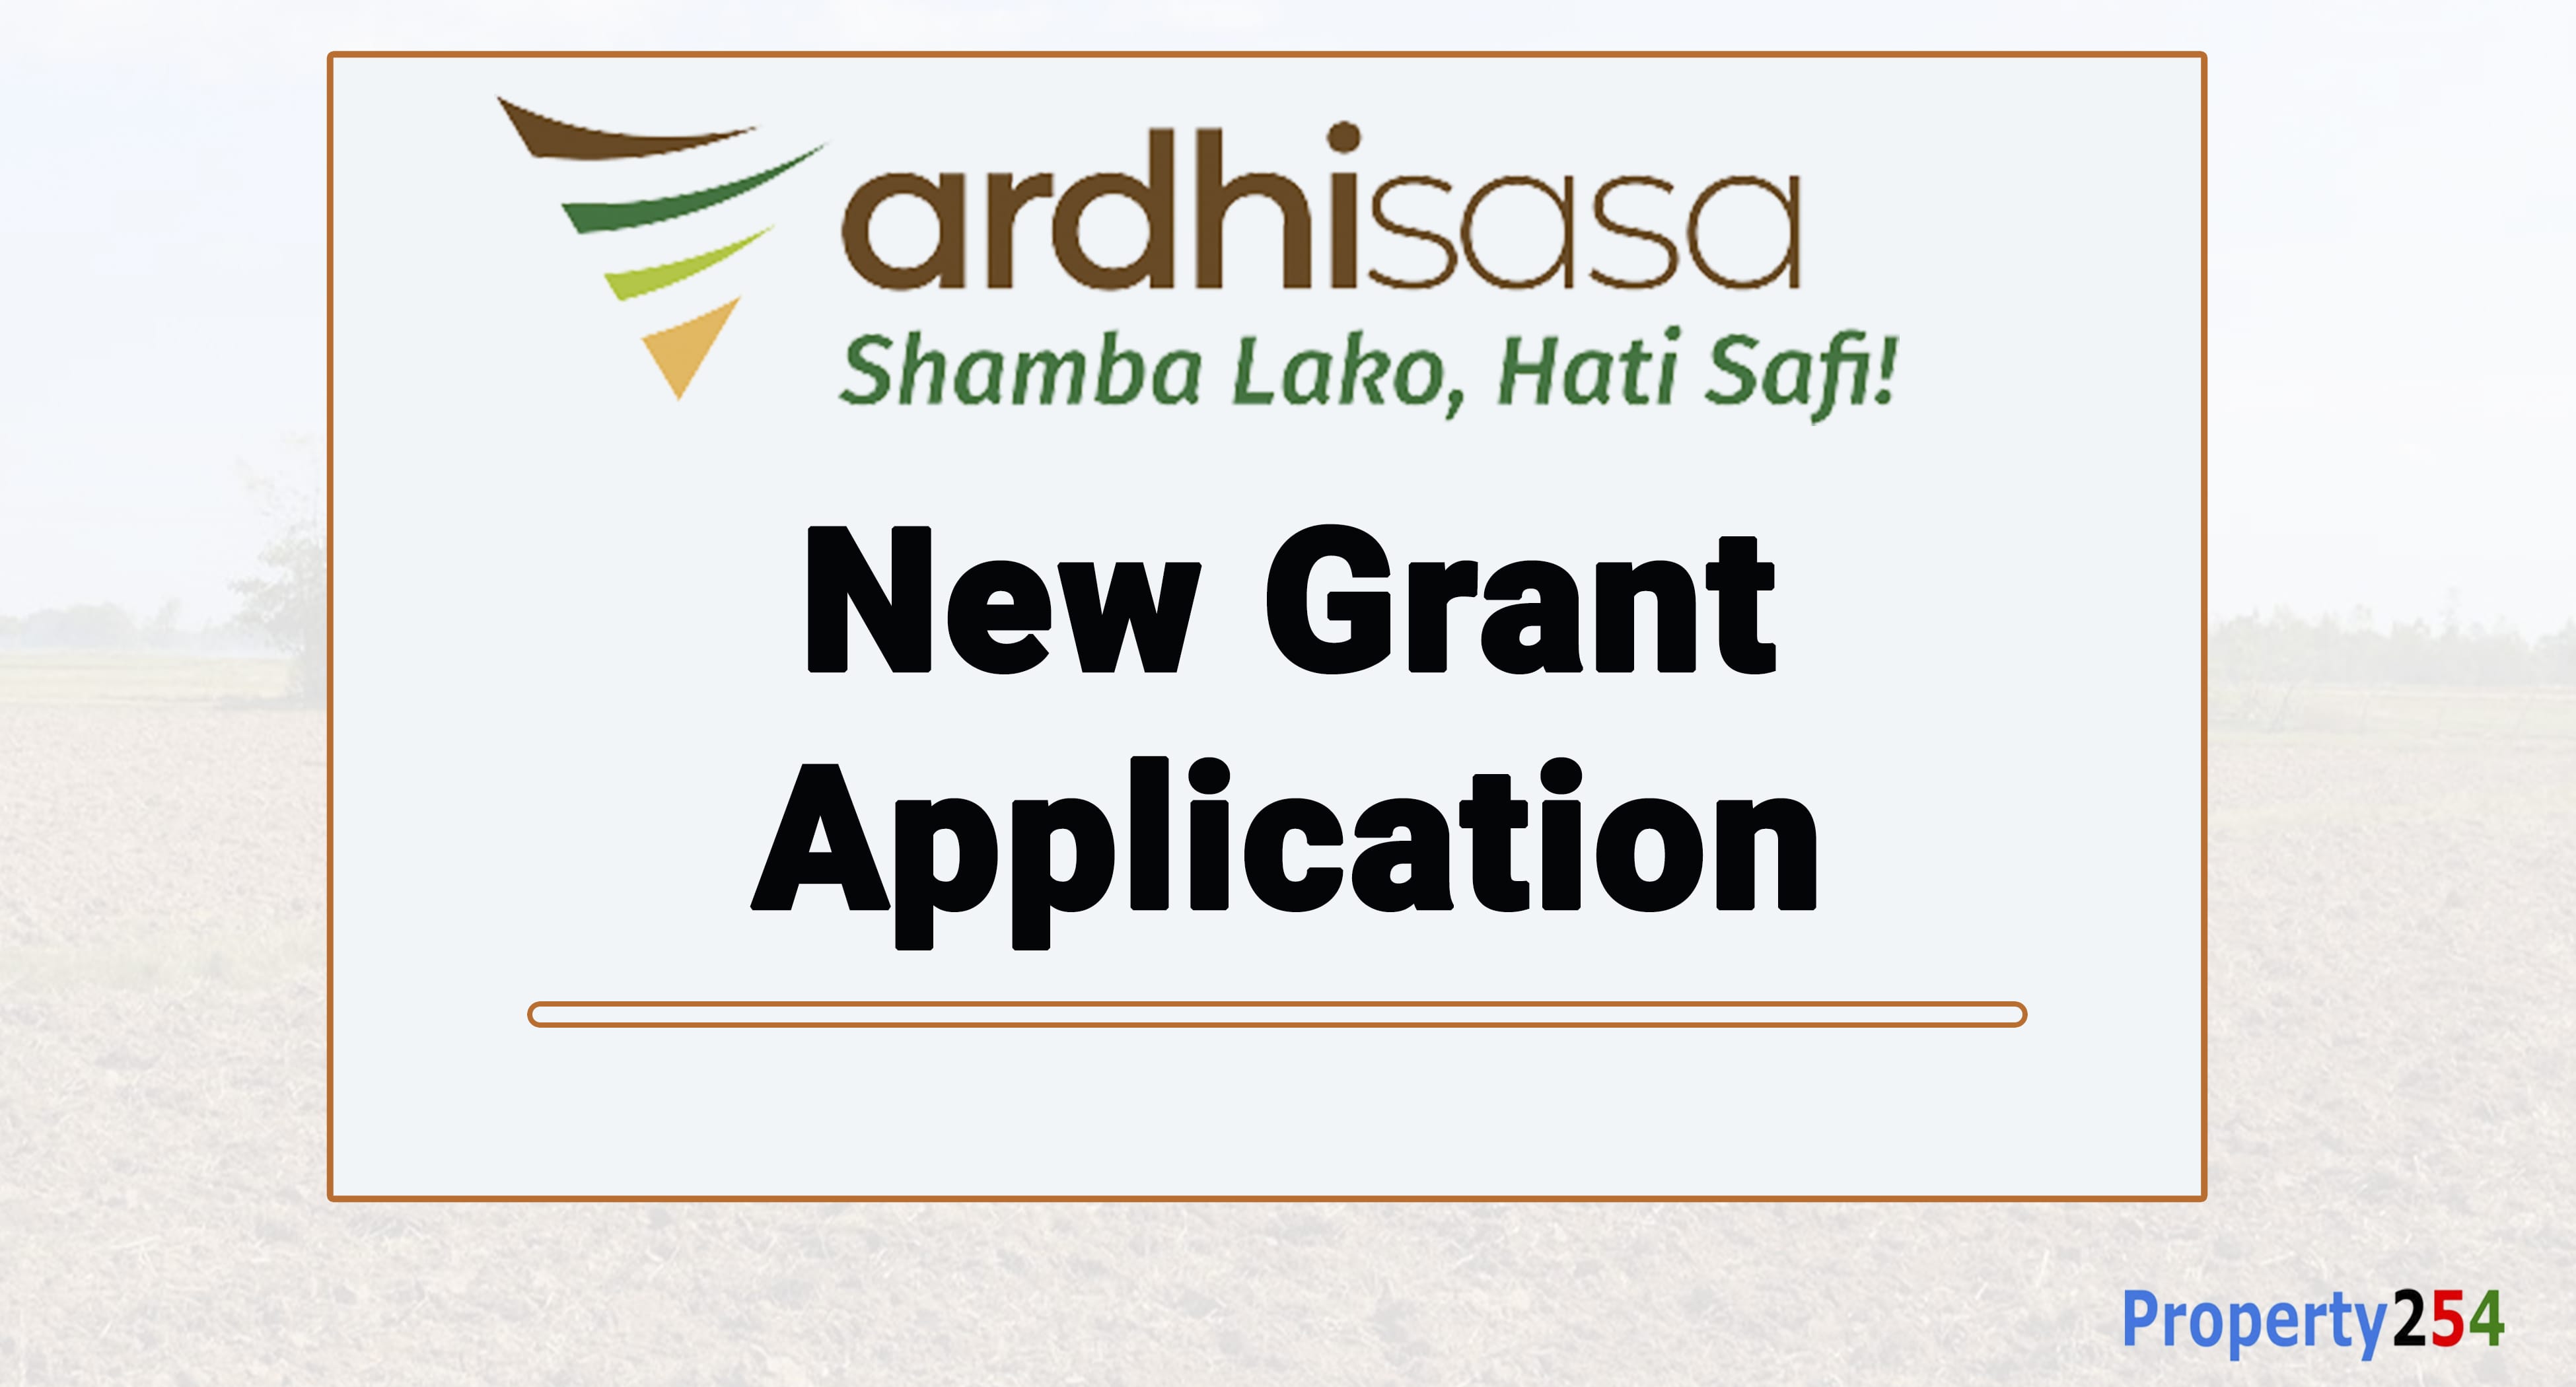 How to Make a New Grant Application ArdhiSasa thumbnail